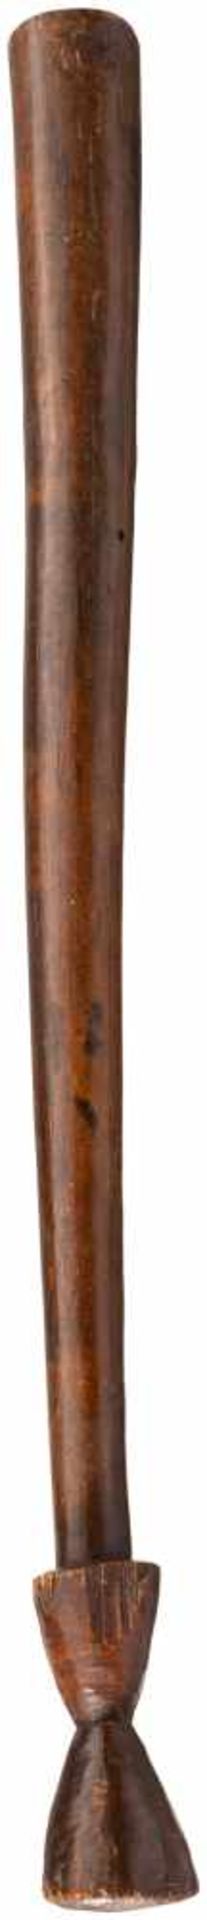 Kriegskeule "Gadi", FidschiNach oben konisch erweiterte Holzkeule mit doppelt konischem Knauf am